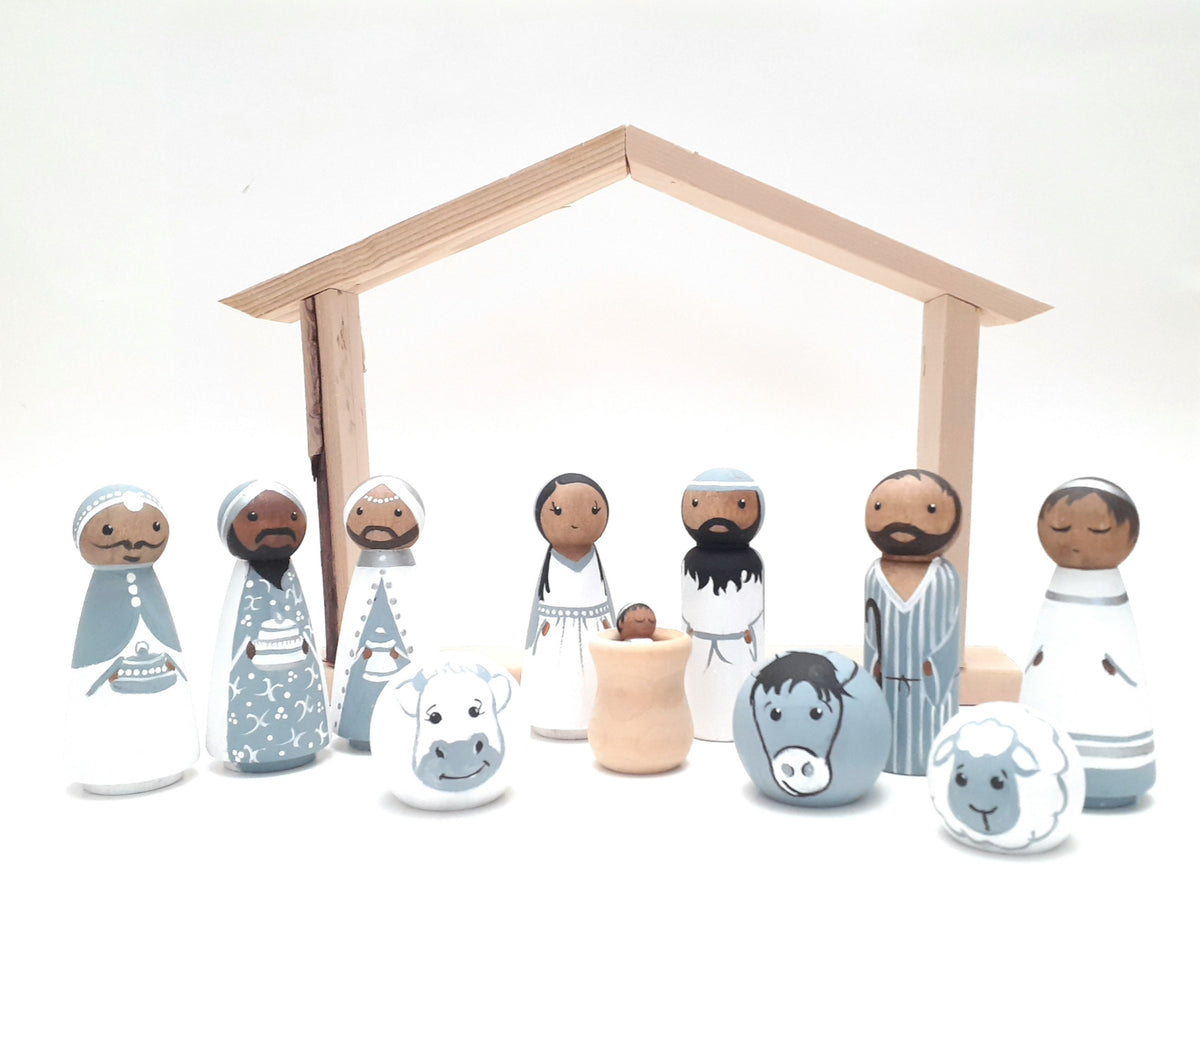 Wooden Peg Doll Nativity set